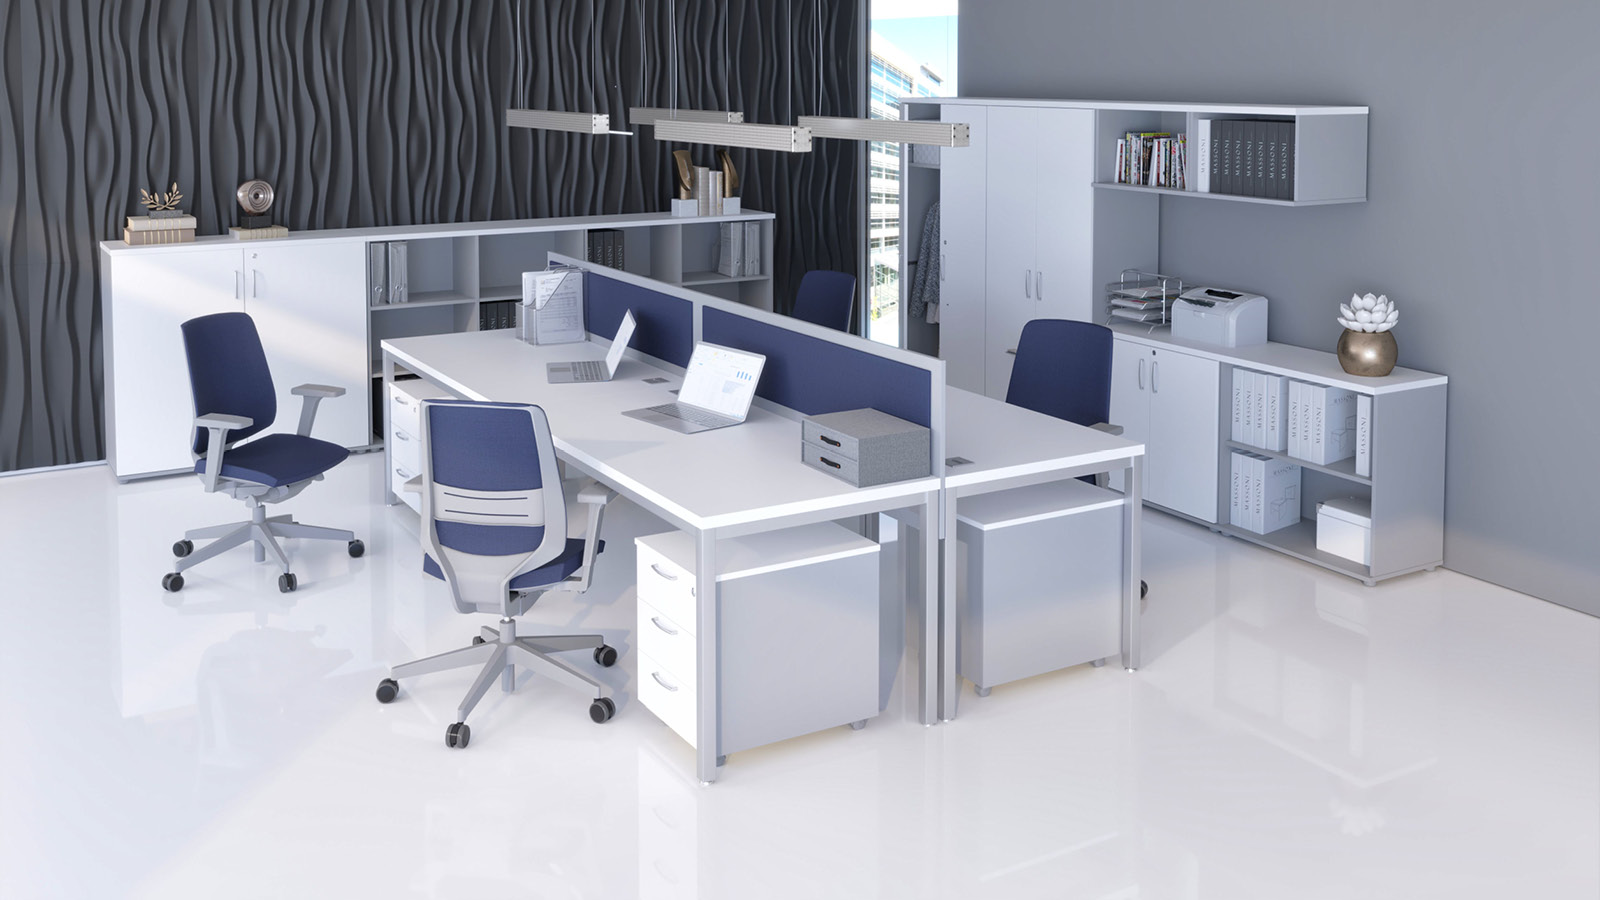 Aranżacja open space - biurka wieloosobowe w kolorze: biały/popiel uzupełnione o panele dzielące, kontenerki, szafy aktowe.